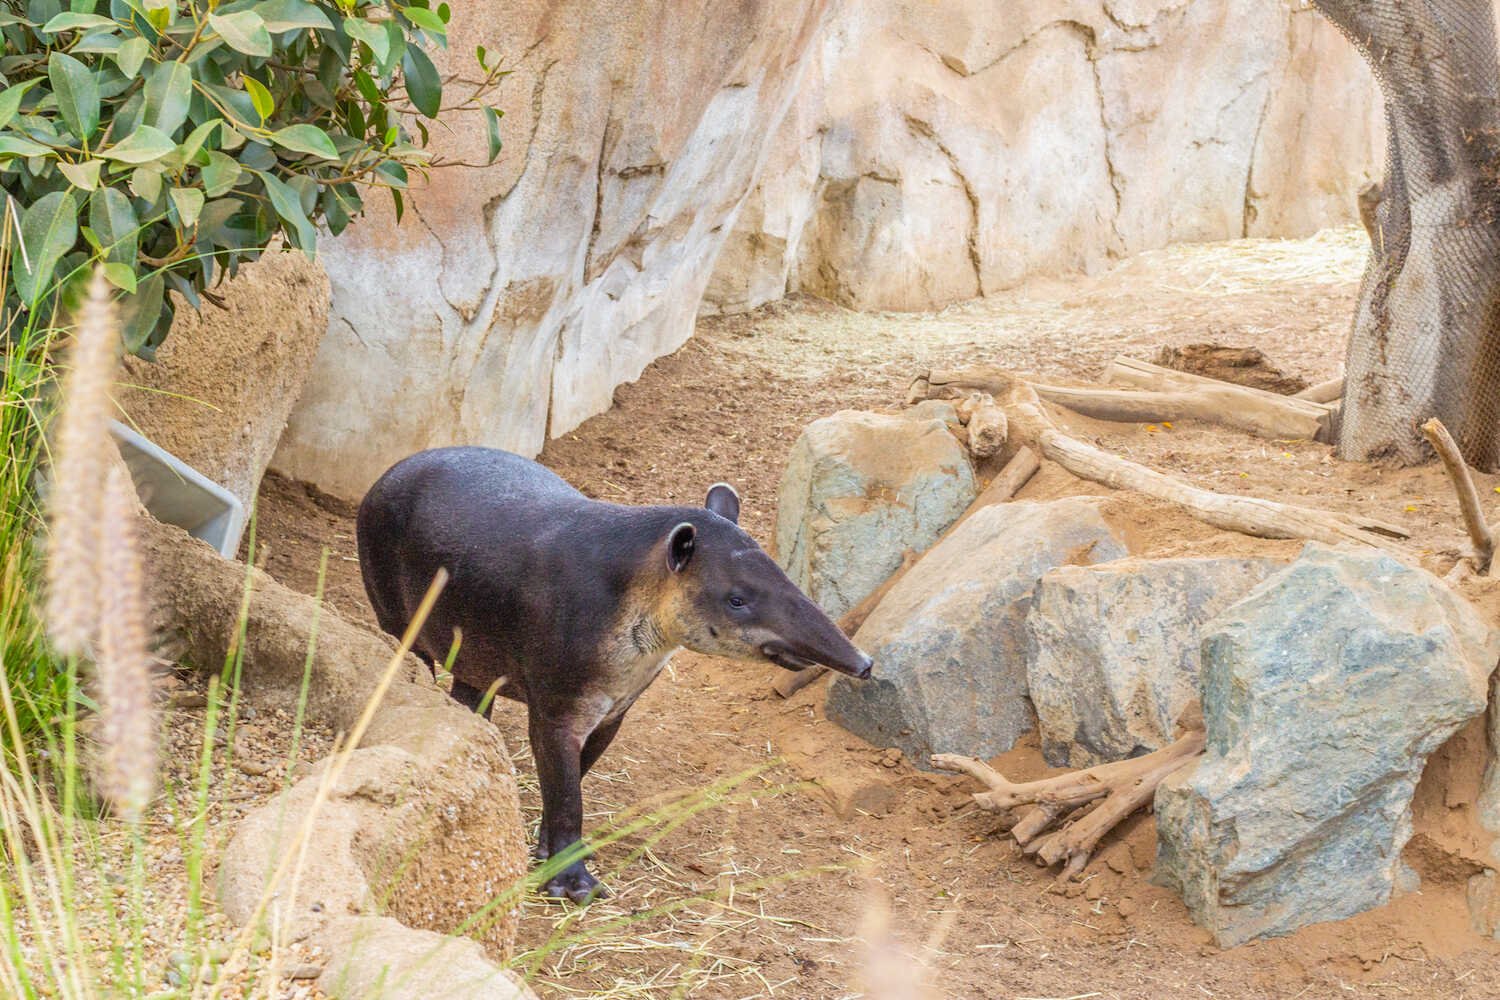 San Diego Zoo vs. Safari Park - Pros and Cons of Each Park